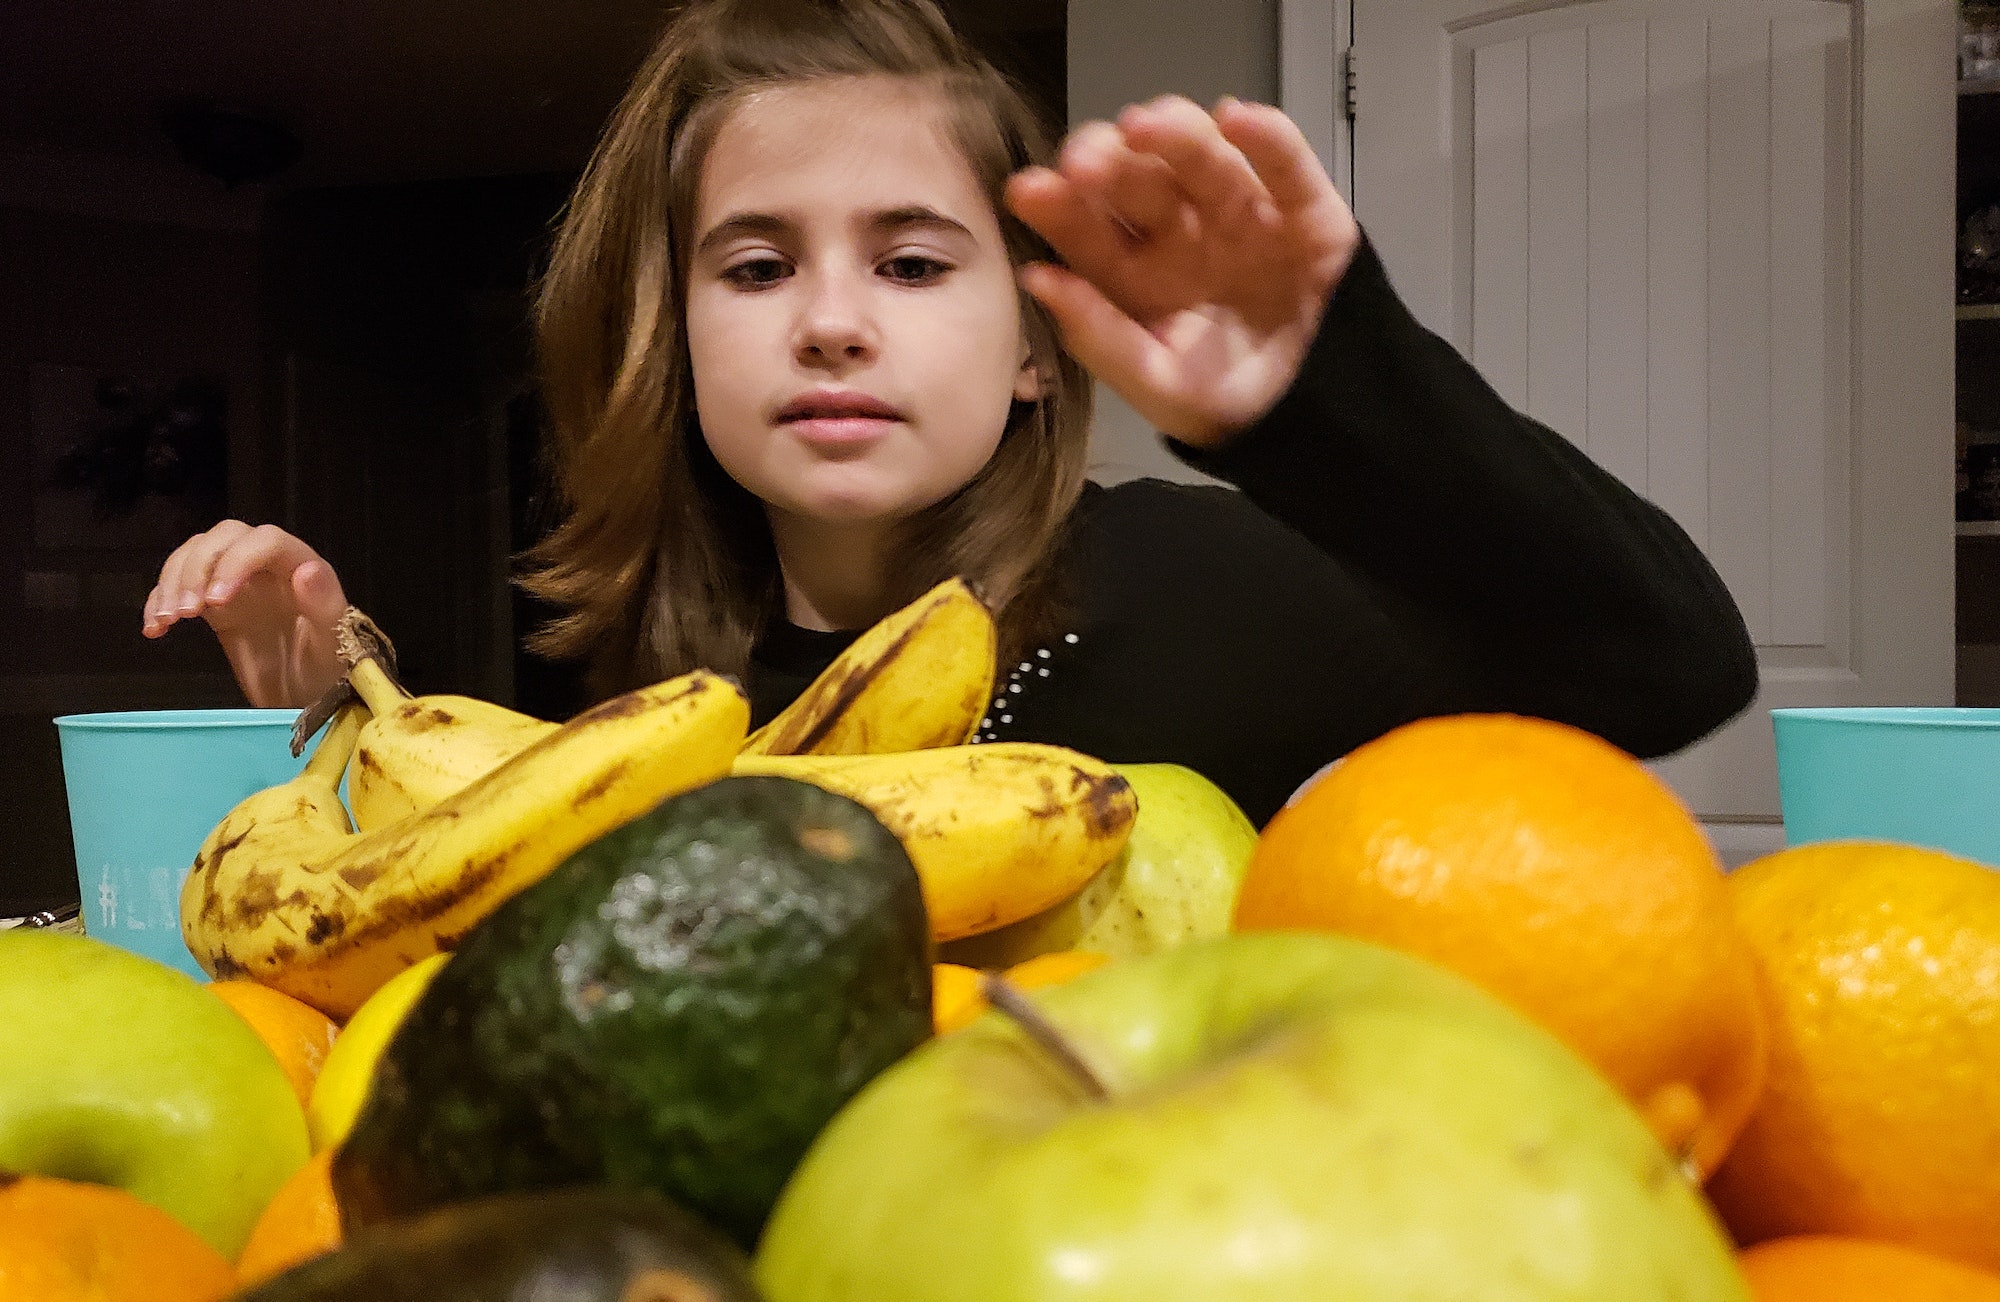 Des fruits et légumes bio pour votre enfant 